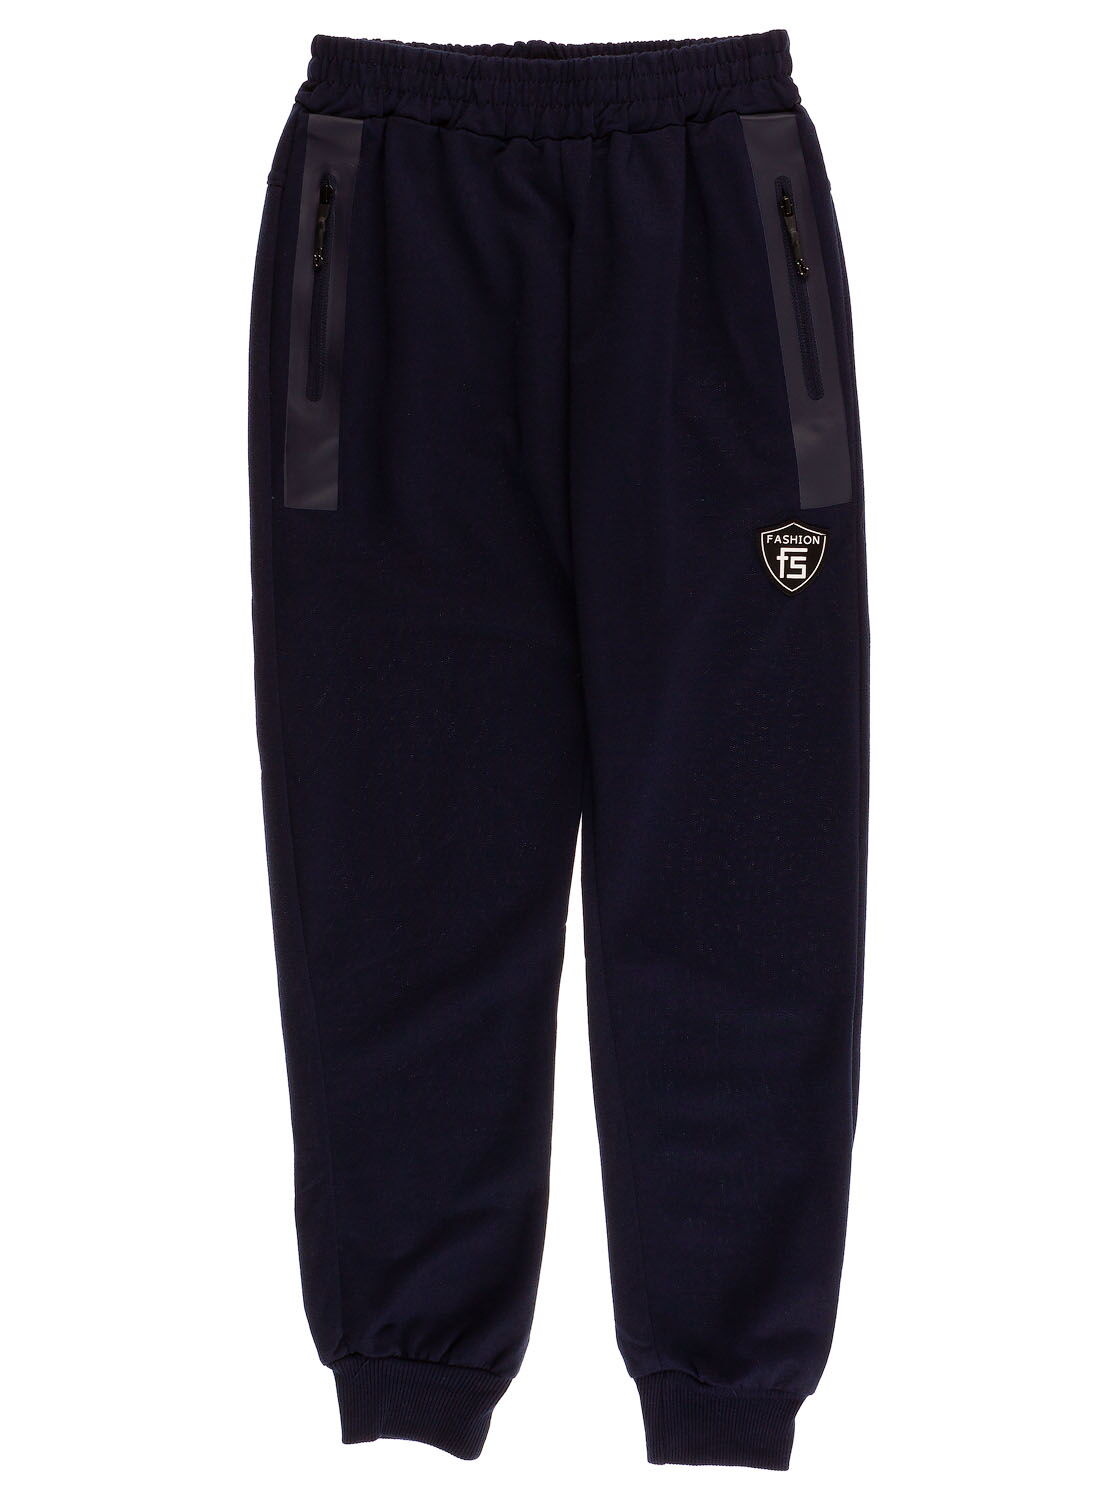 Спортивные штаны для мальчика S&D темно-синие 3724 - цена